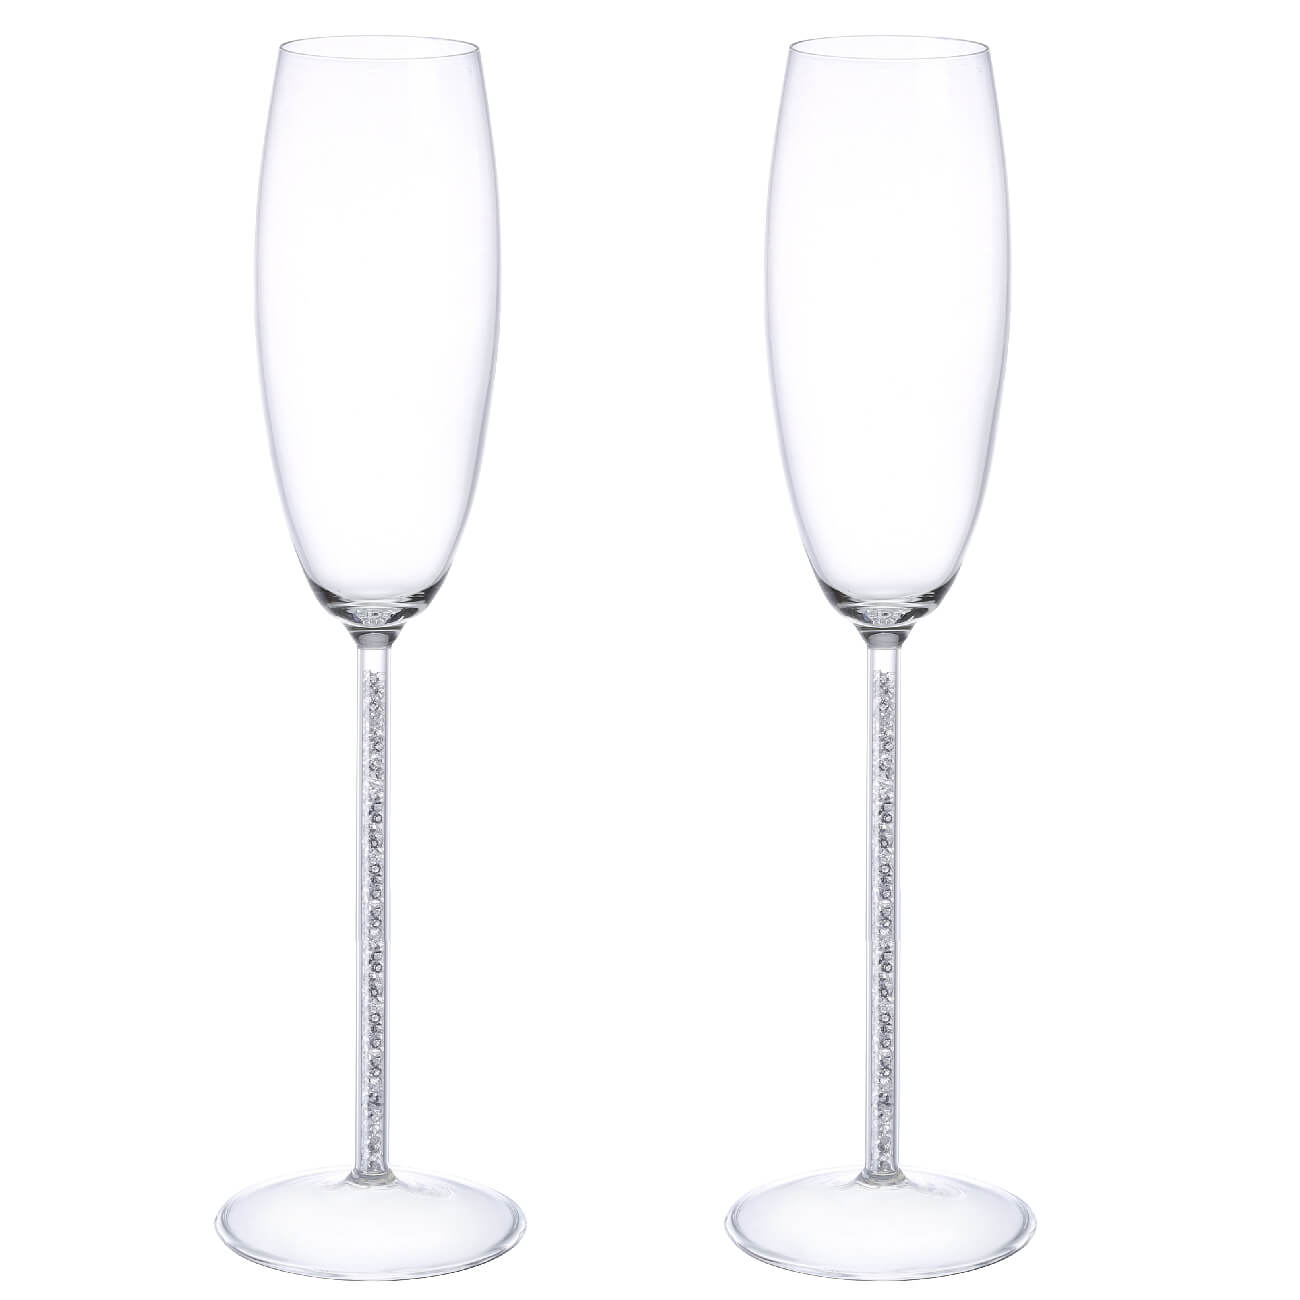 Бокал для шампанского, 180 мл, 2 шт, стекло/стразы, Crystal decor бокал для шампанского 180 мл 4 шт charm l